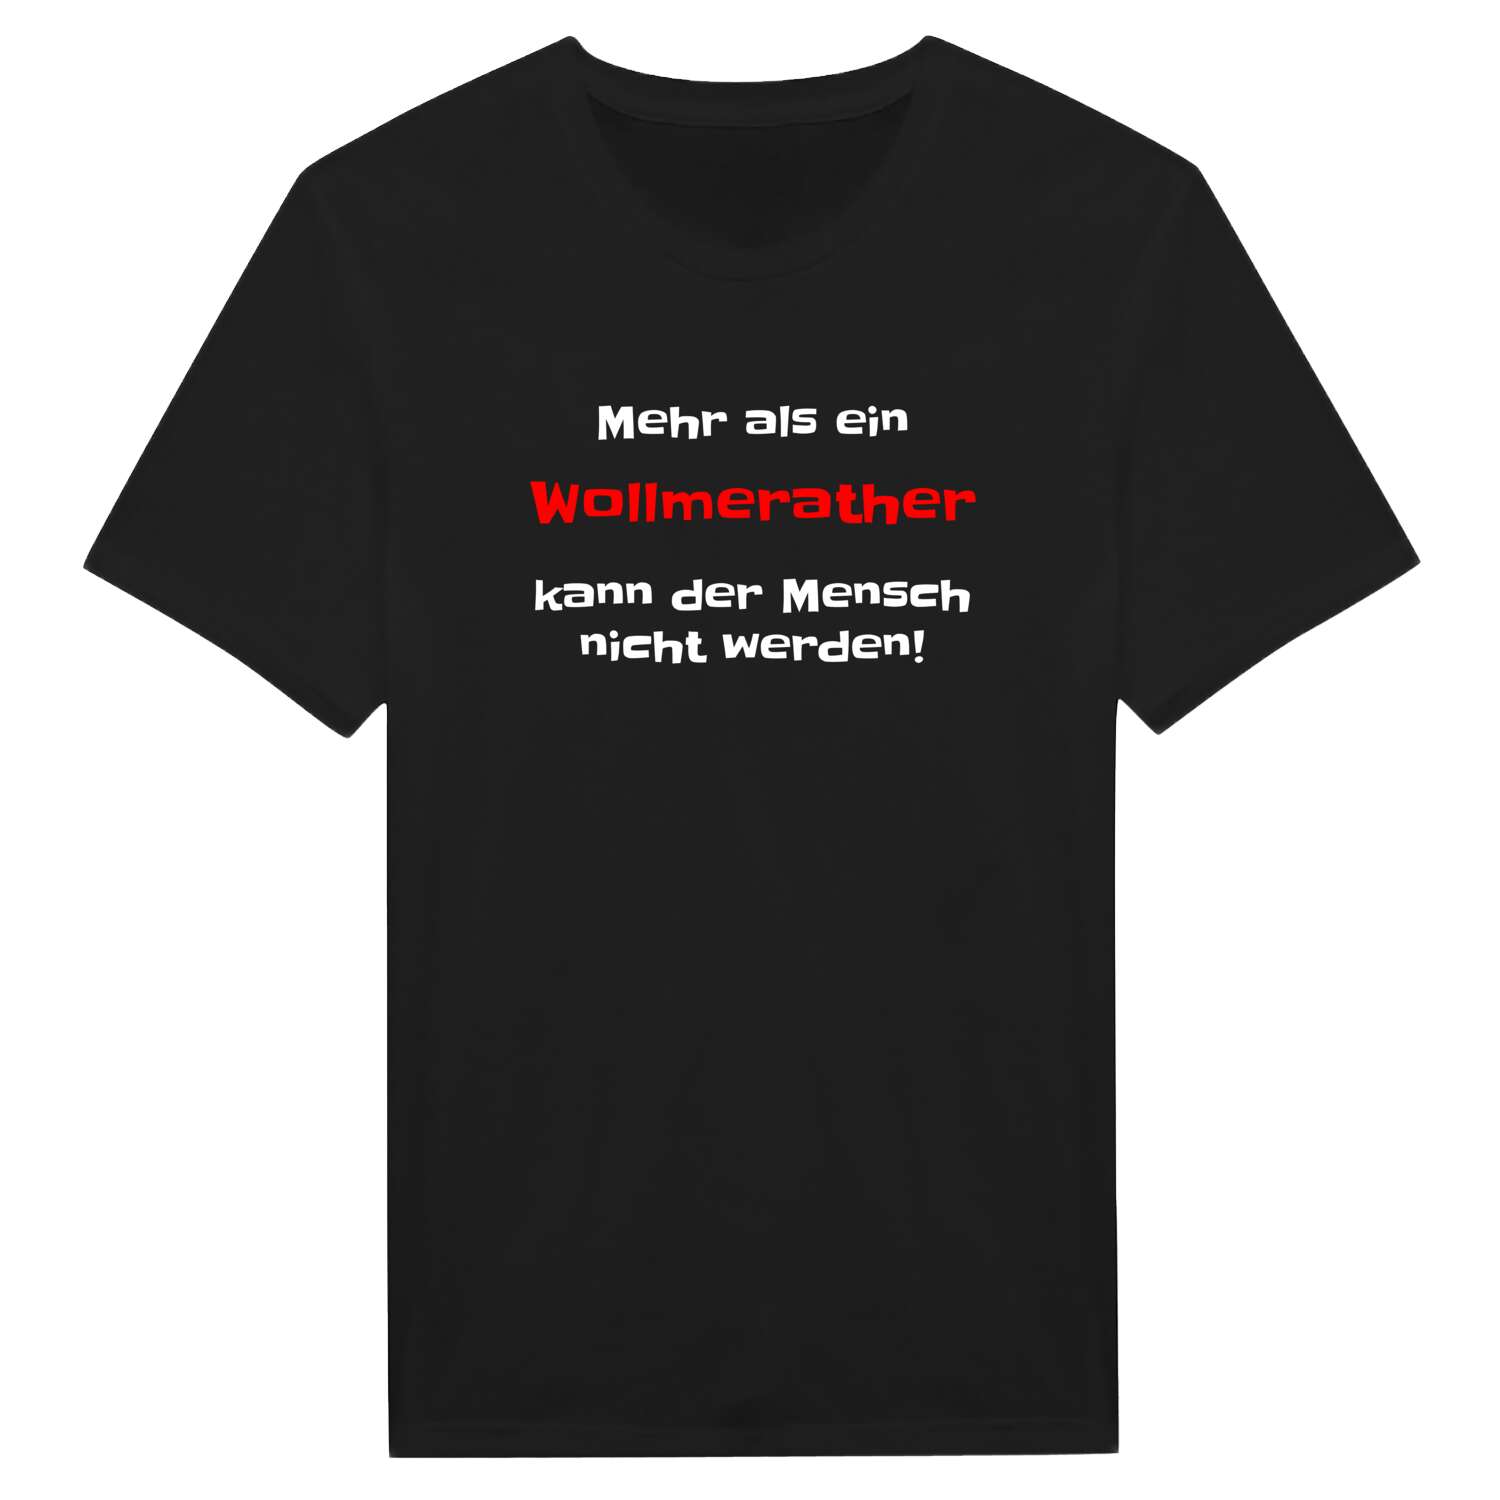 Wollmerath T-Shirt »Mehr als ein«